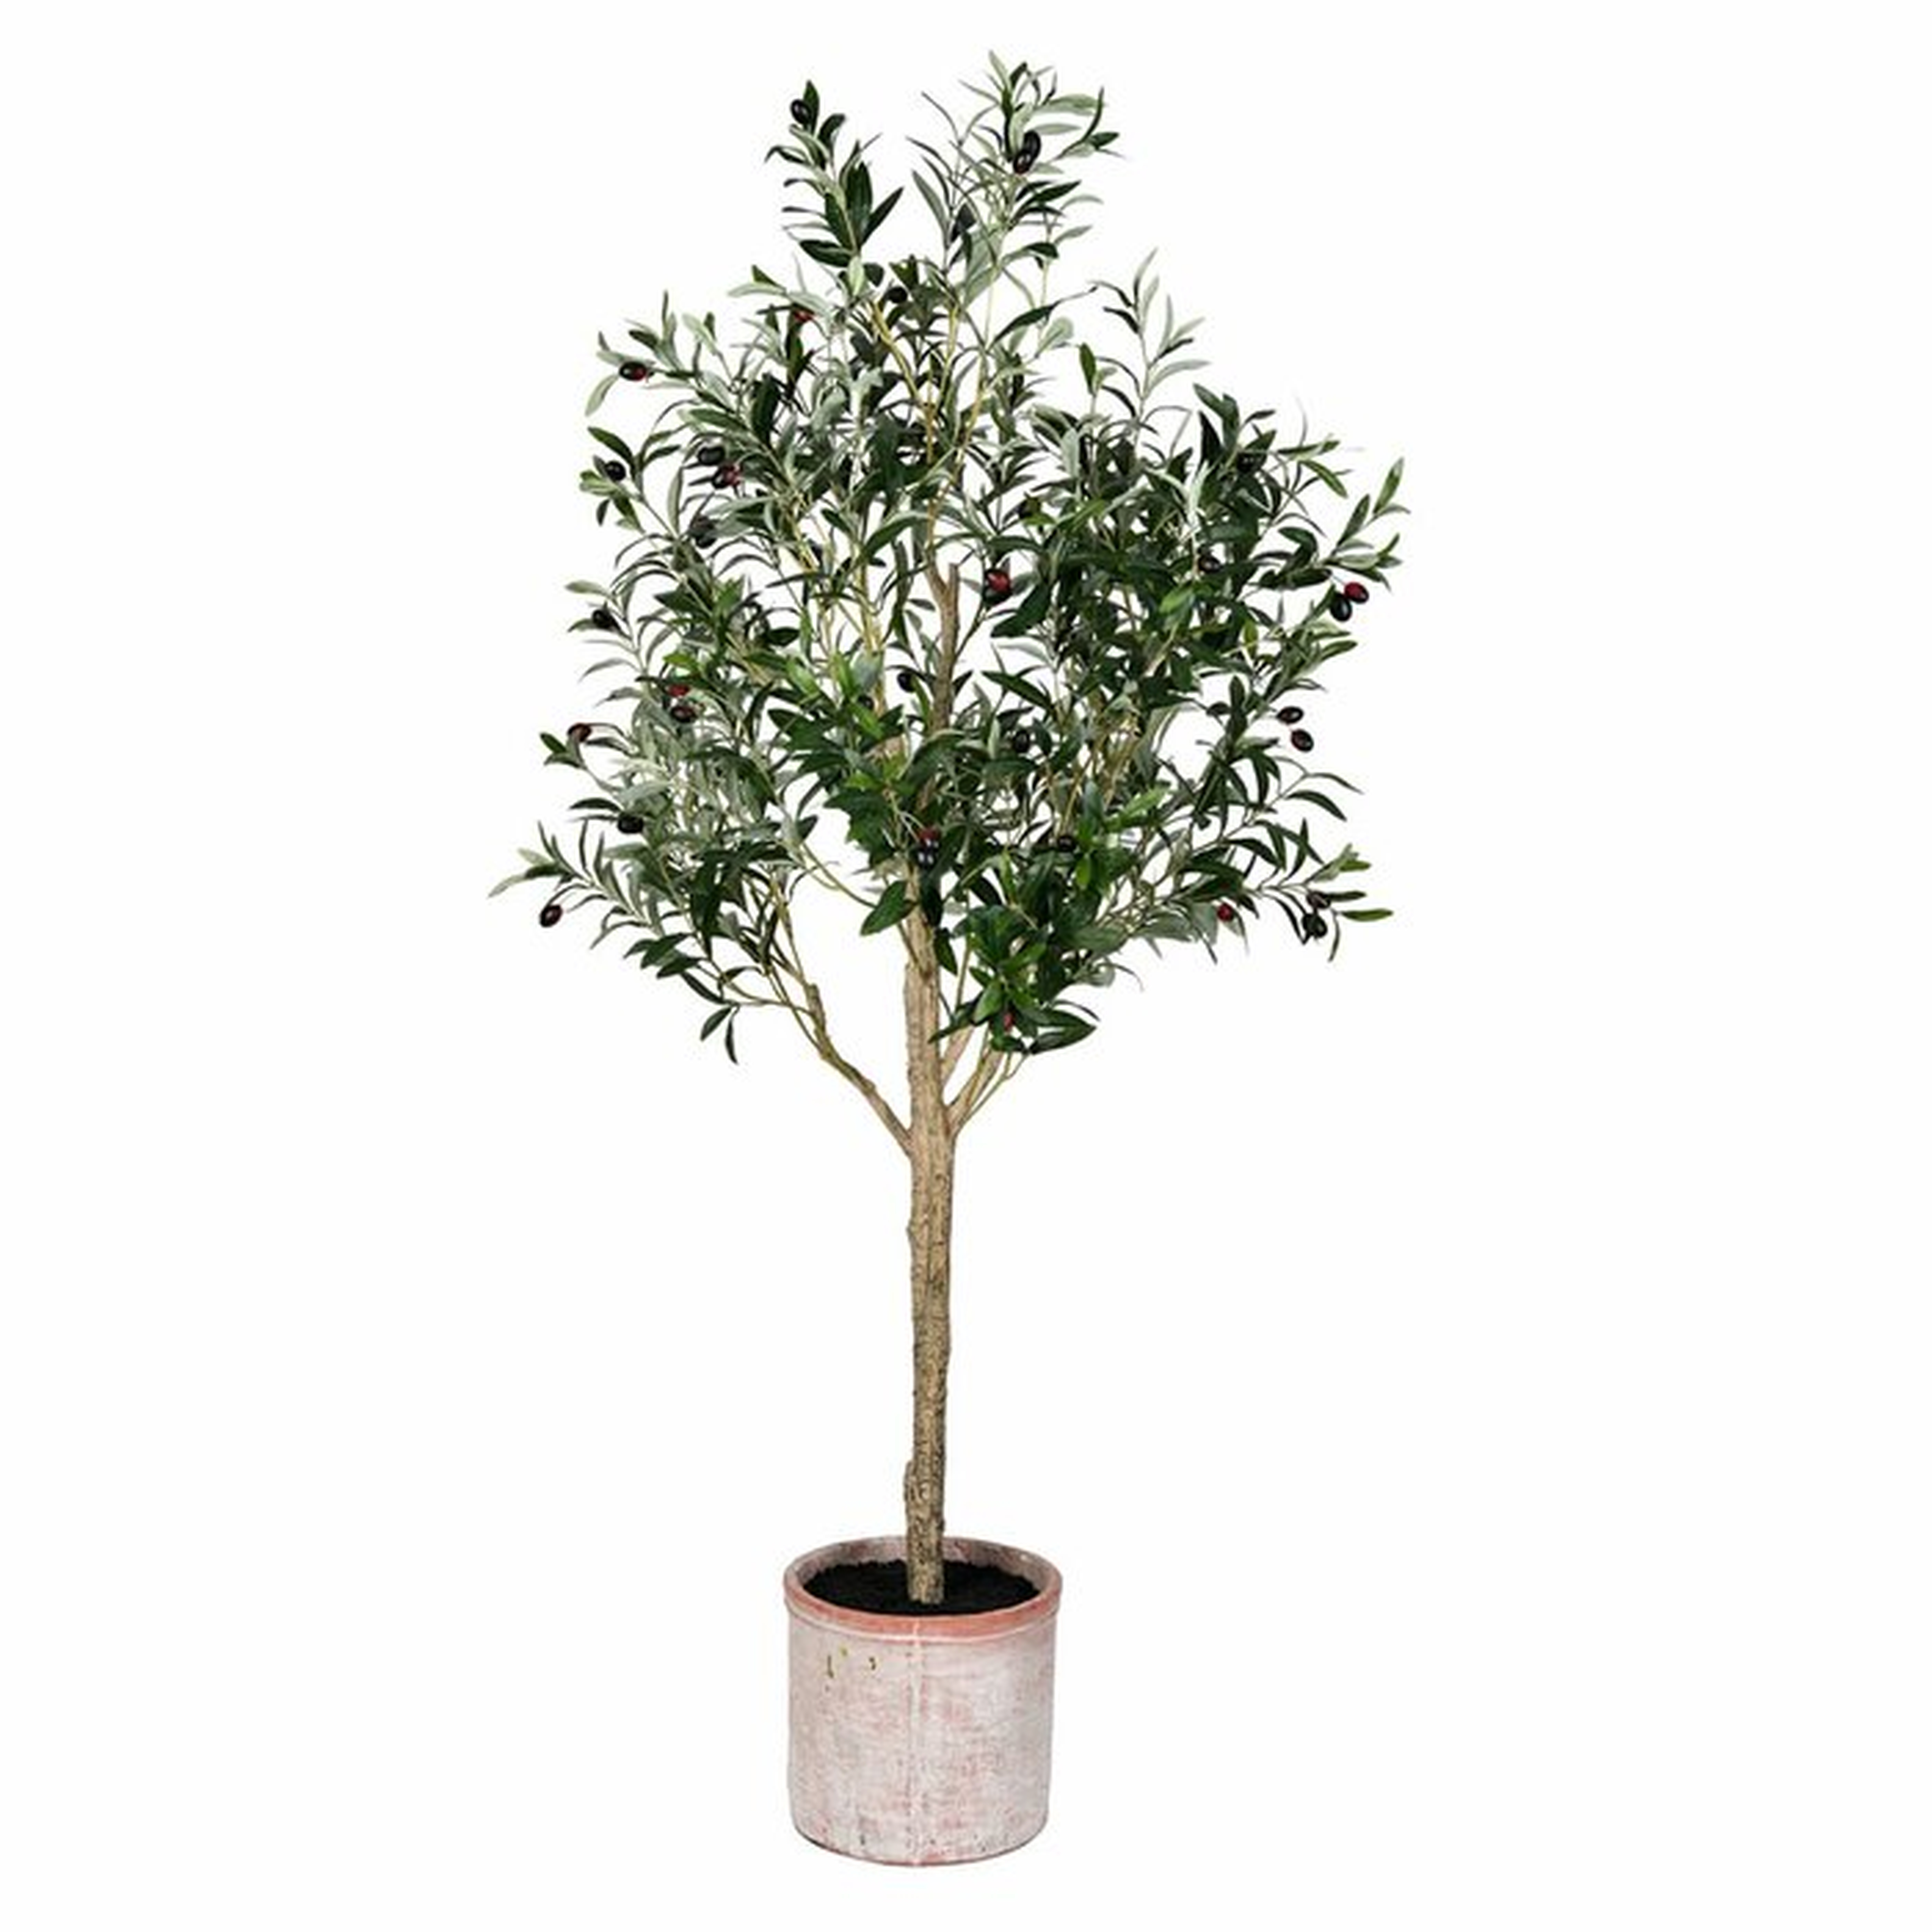 Artificial Olive Tree in Pot - Wayfair